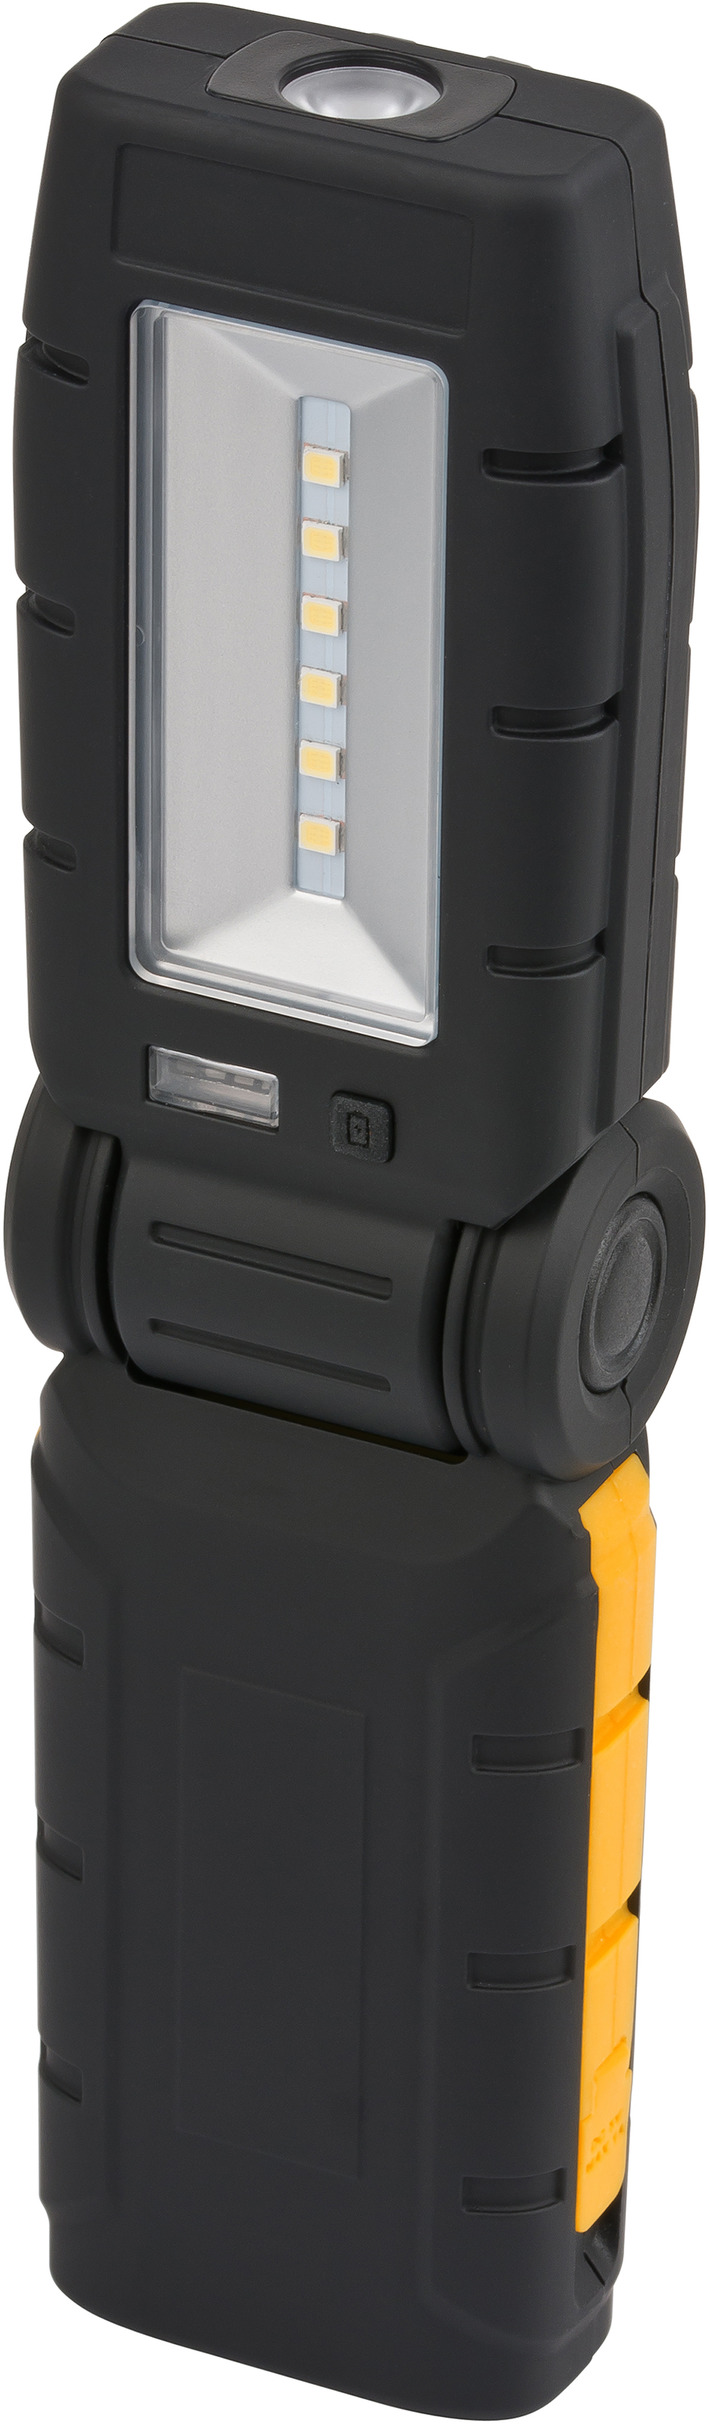 Brennenstuhl 1171260211 Lampe mobile SMD-LED avec batterie ML DA 2407 IP54  20W 1550lm 5900K